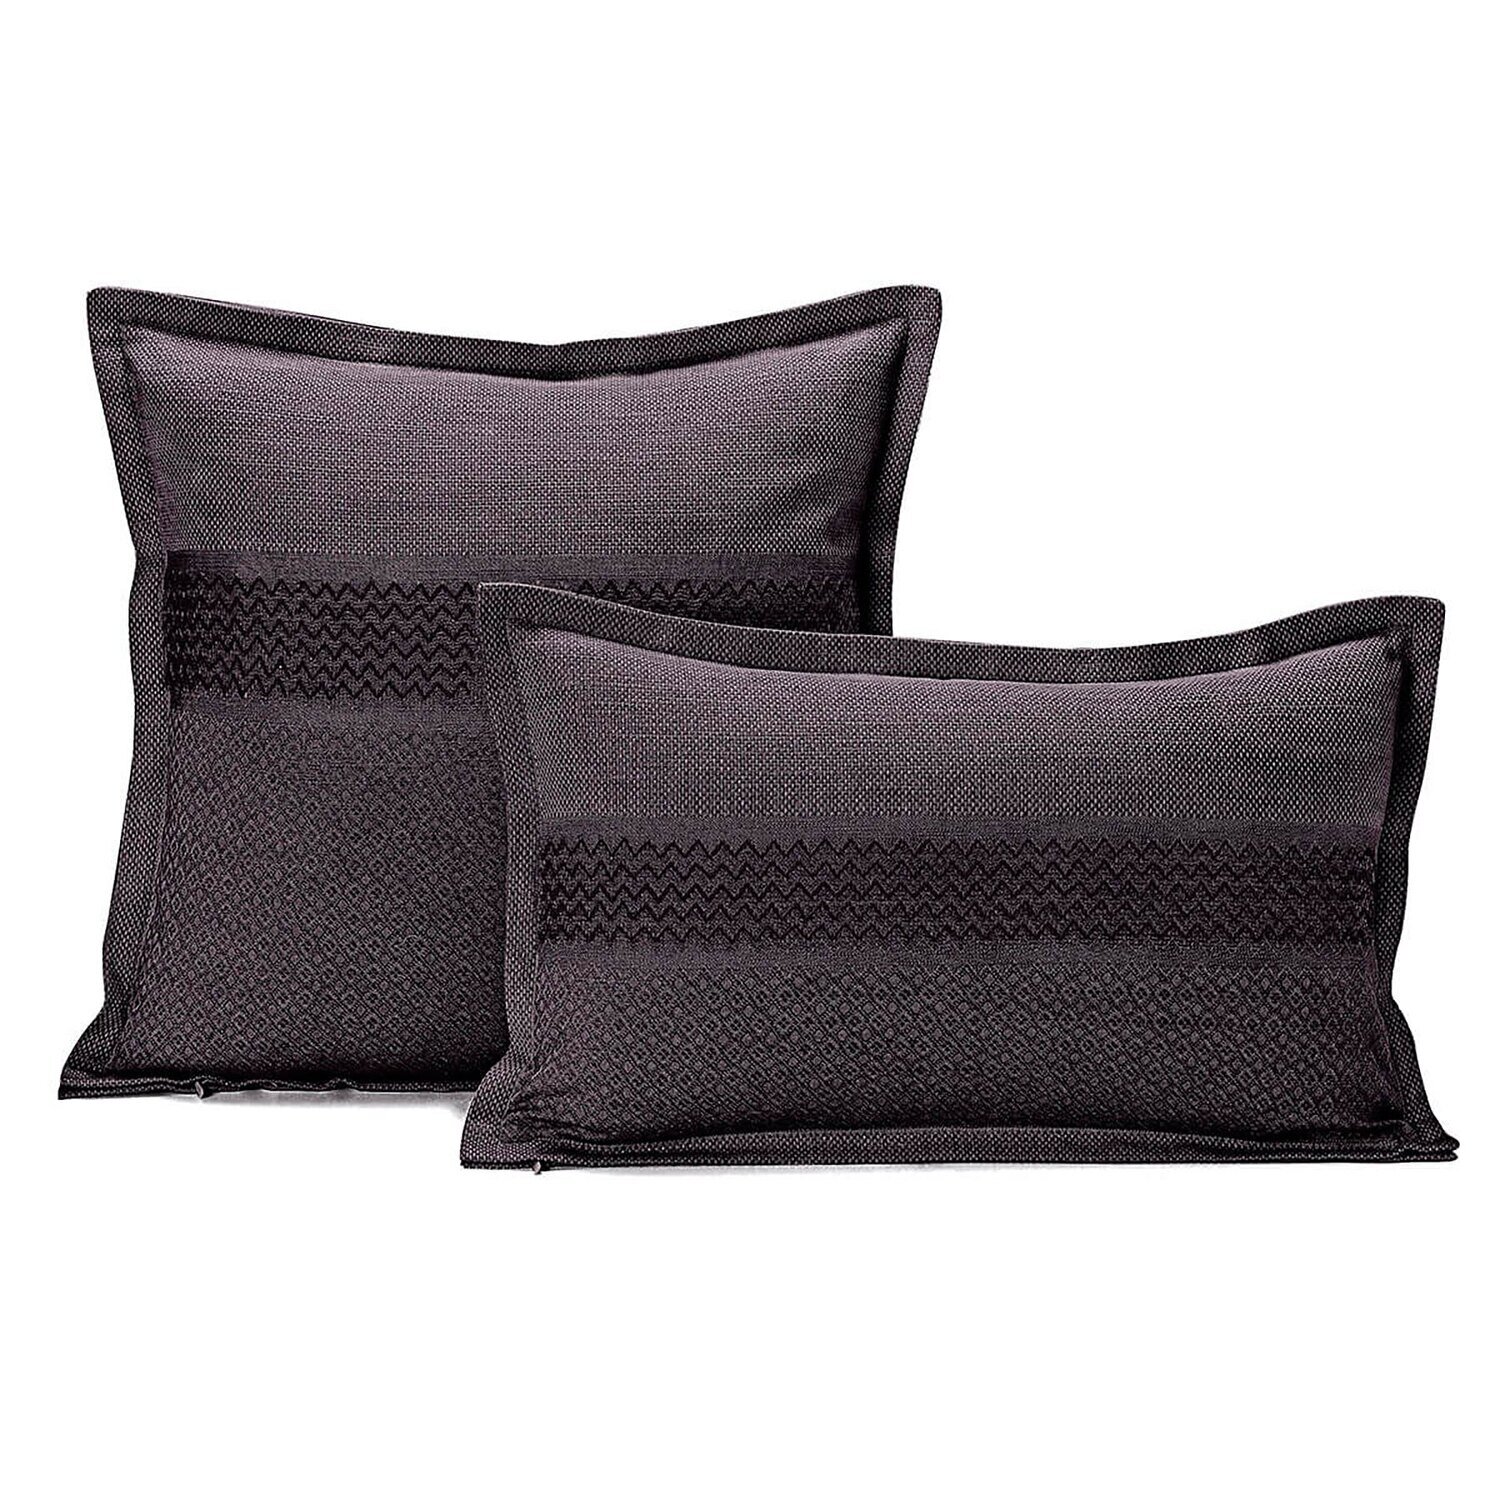 Le Jacquard Cushion Cover Slowlife Carbon50 x 30 89% Coton 1 1% Linen 26720